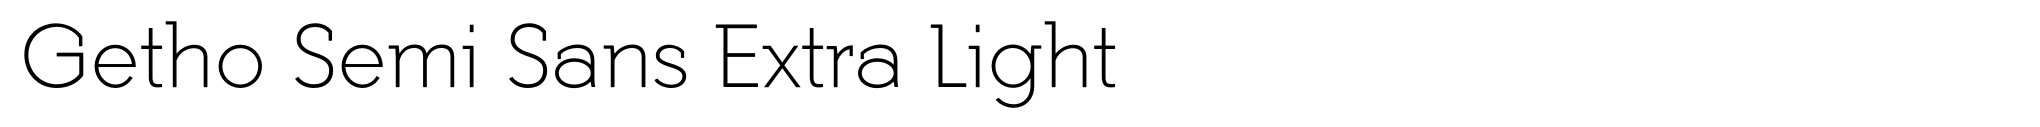 Getho Semi Sans Extra Light image